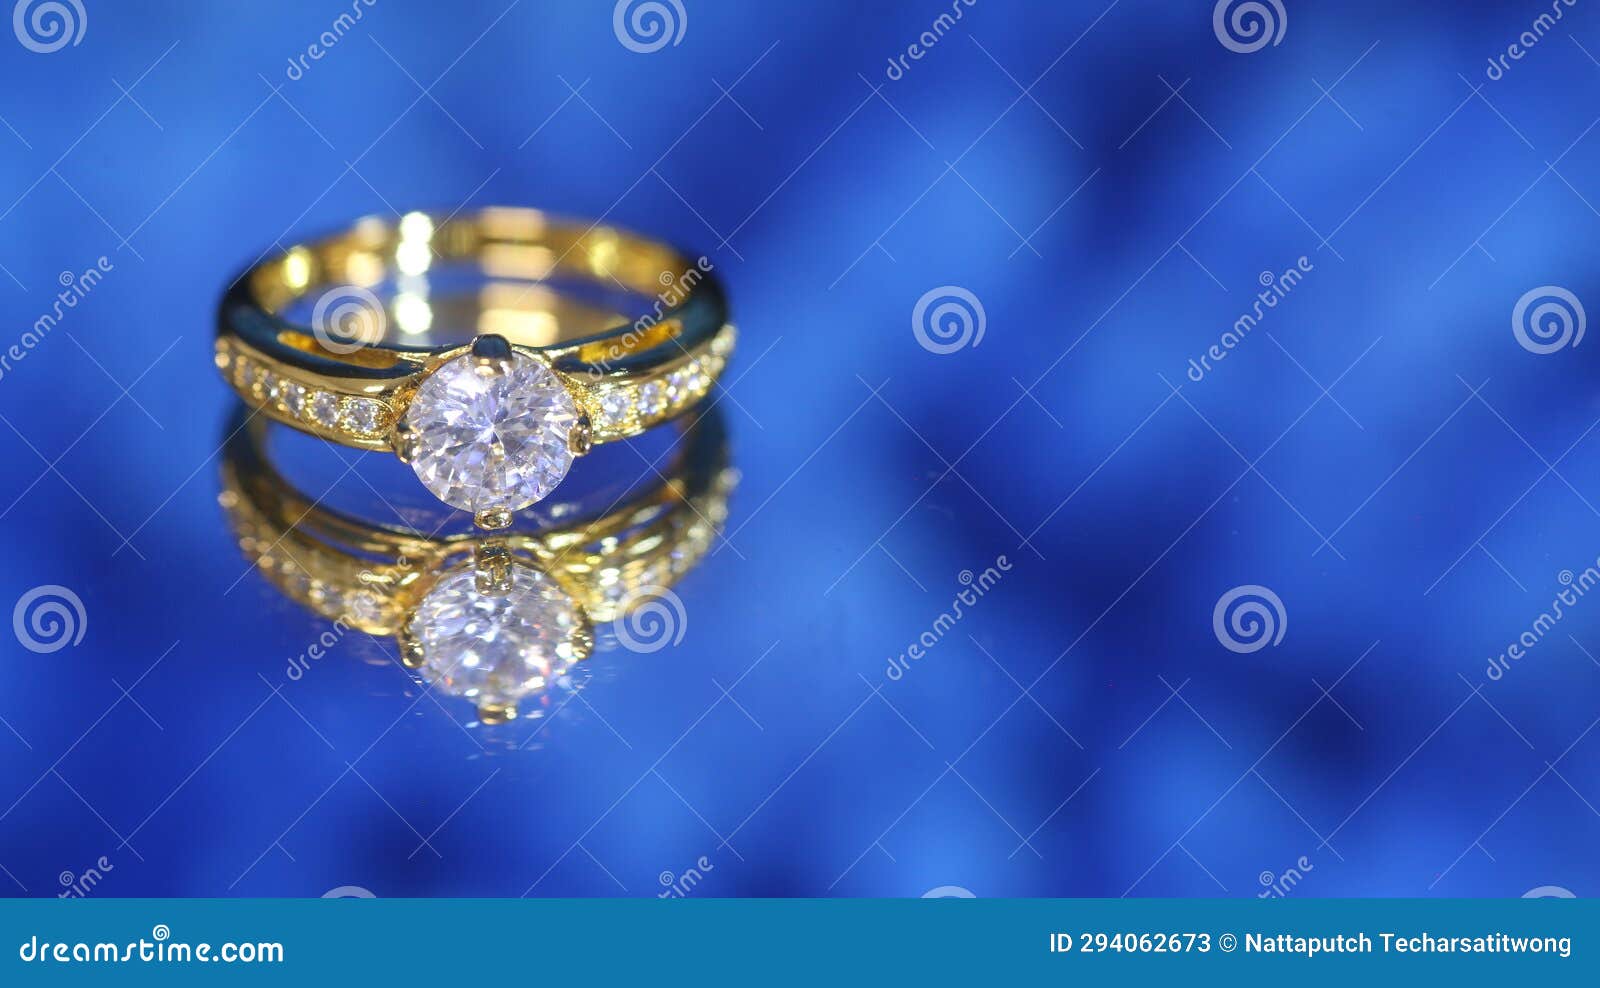 Silván diamond ring 0,22ct, 14K yellow gold, Silván wedding rings